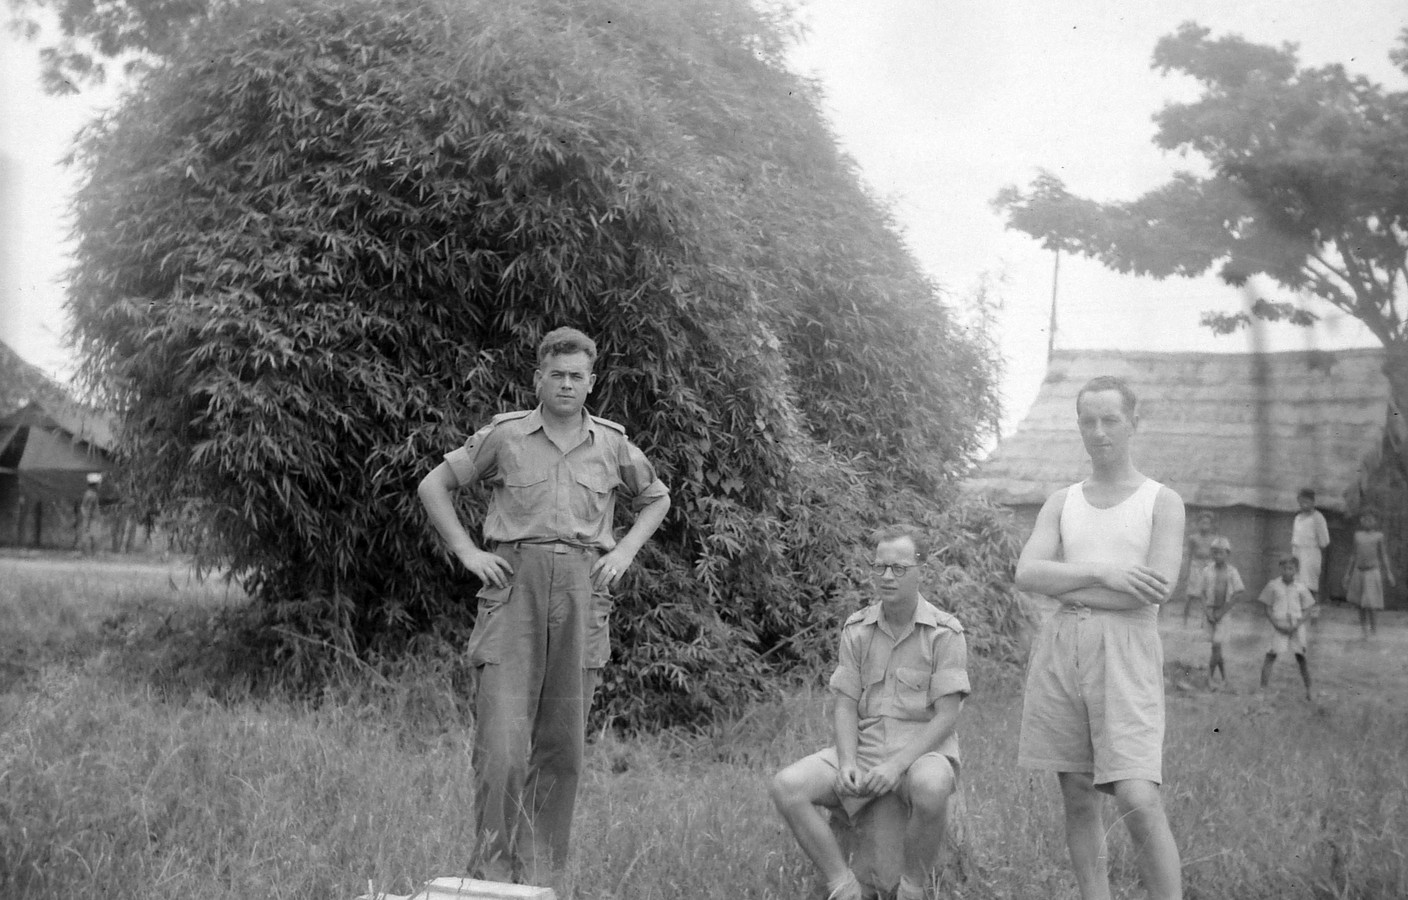 Links Jannes Zandjans uit Markelo in Nederlands Indië, omstreeks 1948.